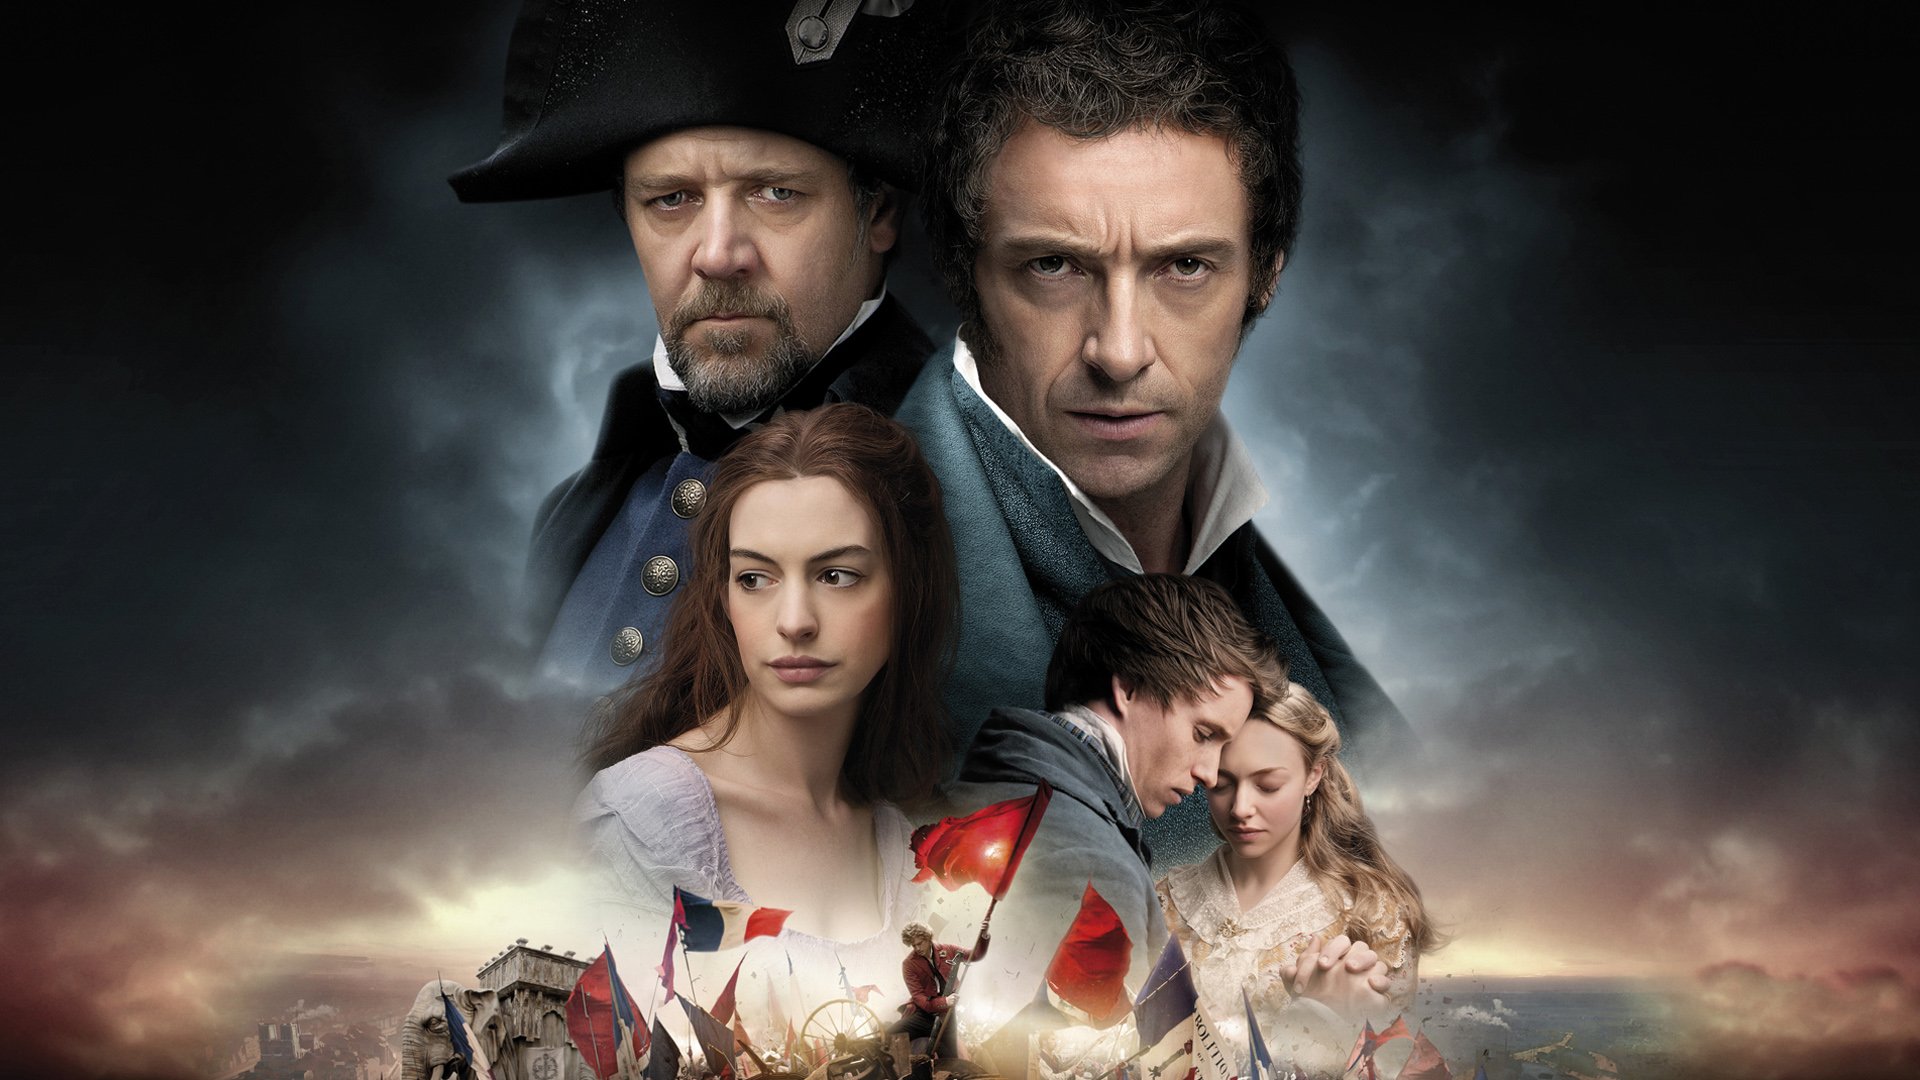 Cosa vedere stasera in tv? Prova a prendermi e Les Misérables tra i film di oggi, mercoledì 25 novembre 2020